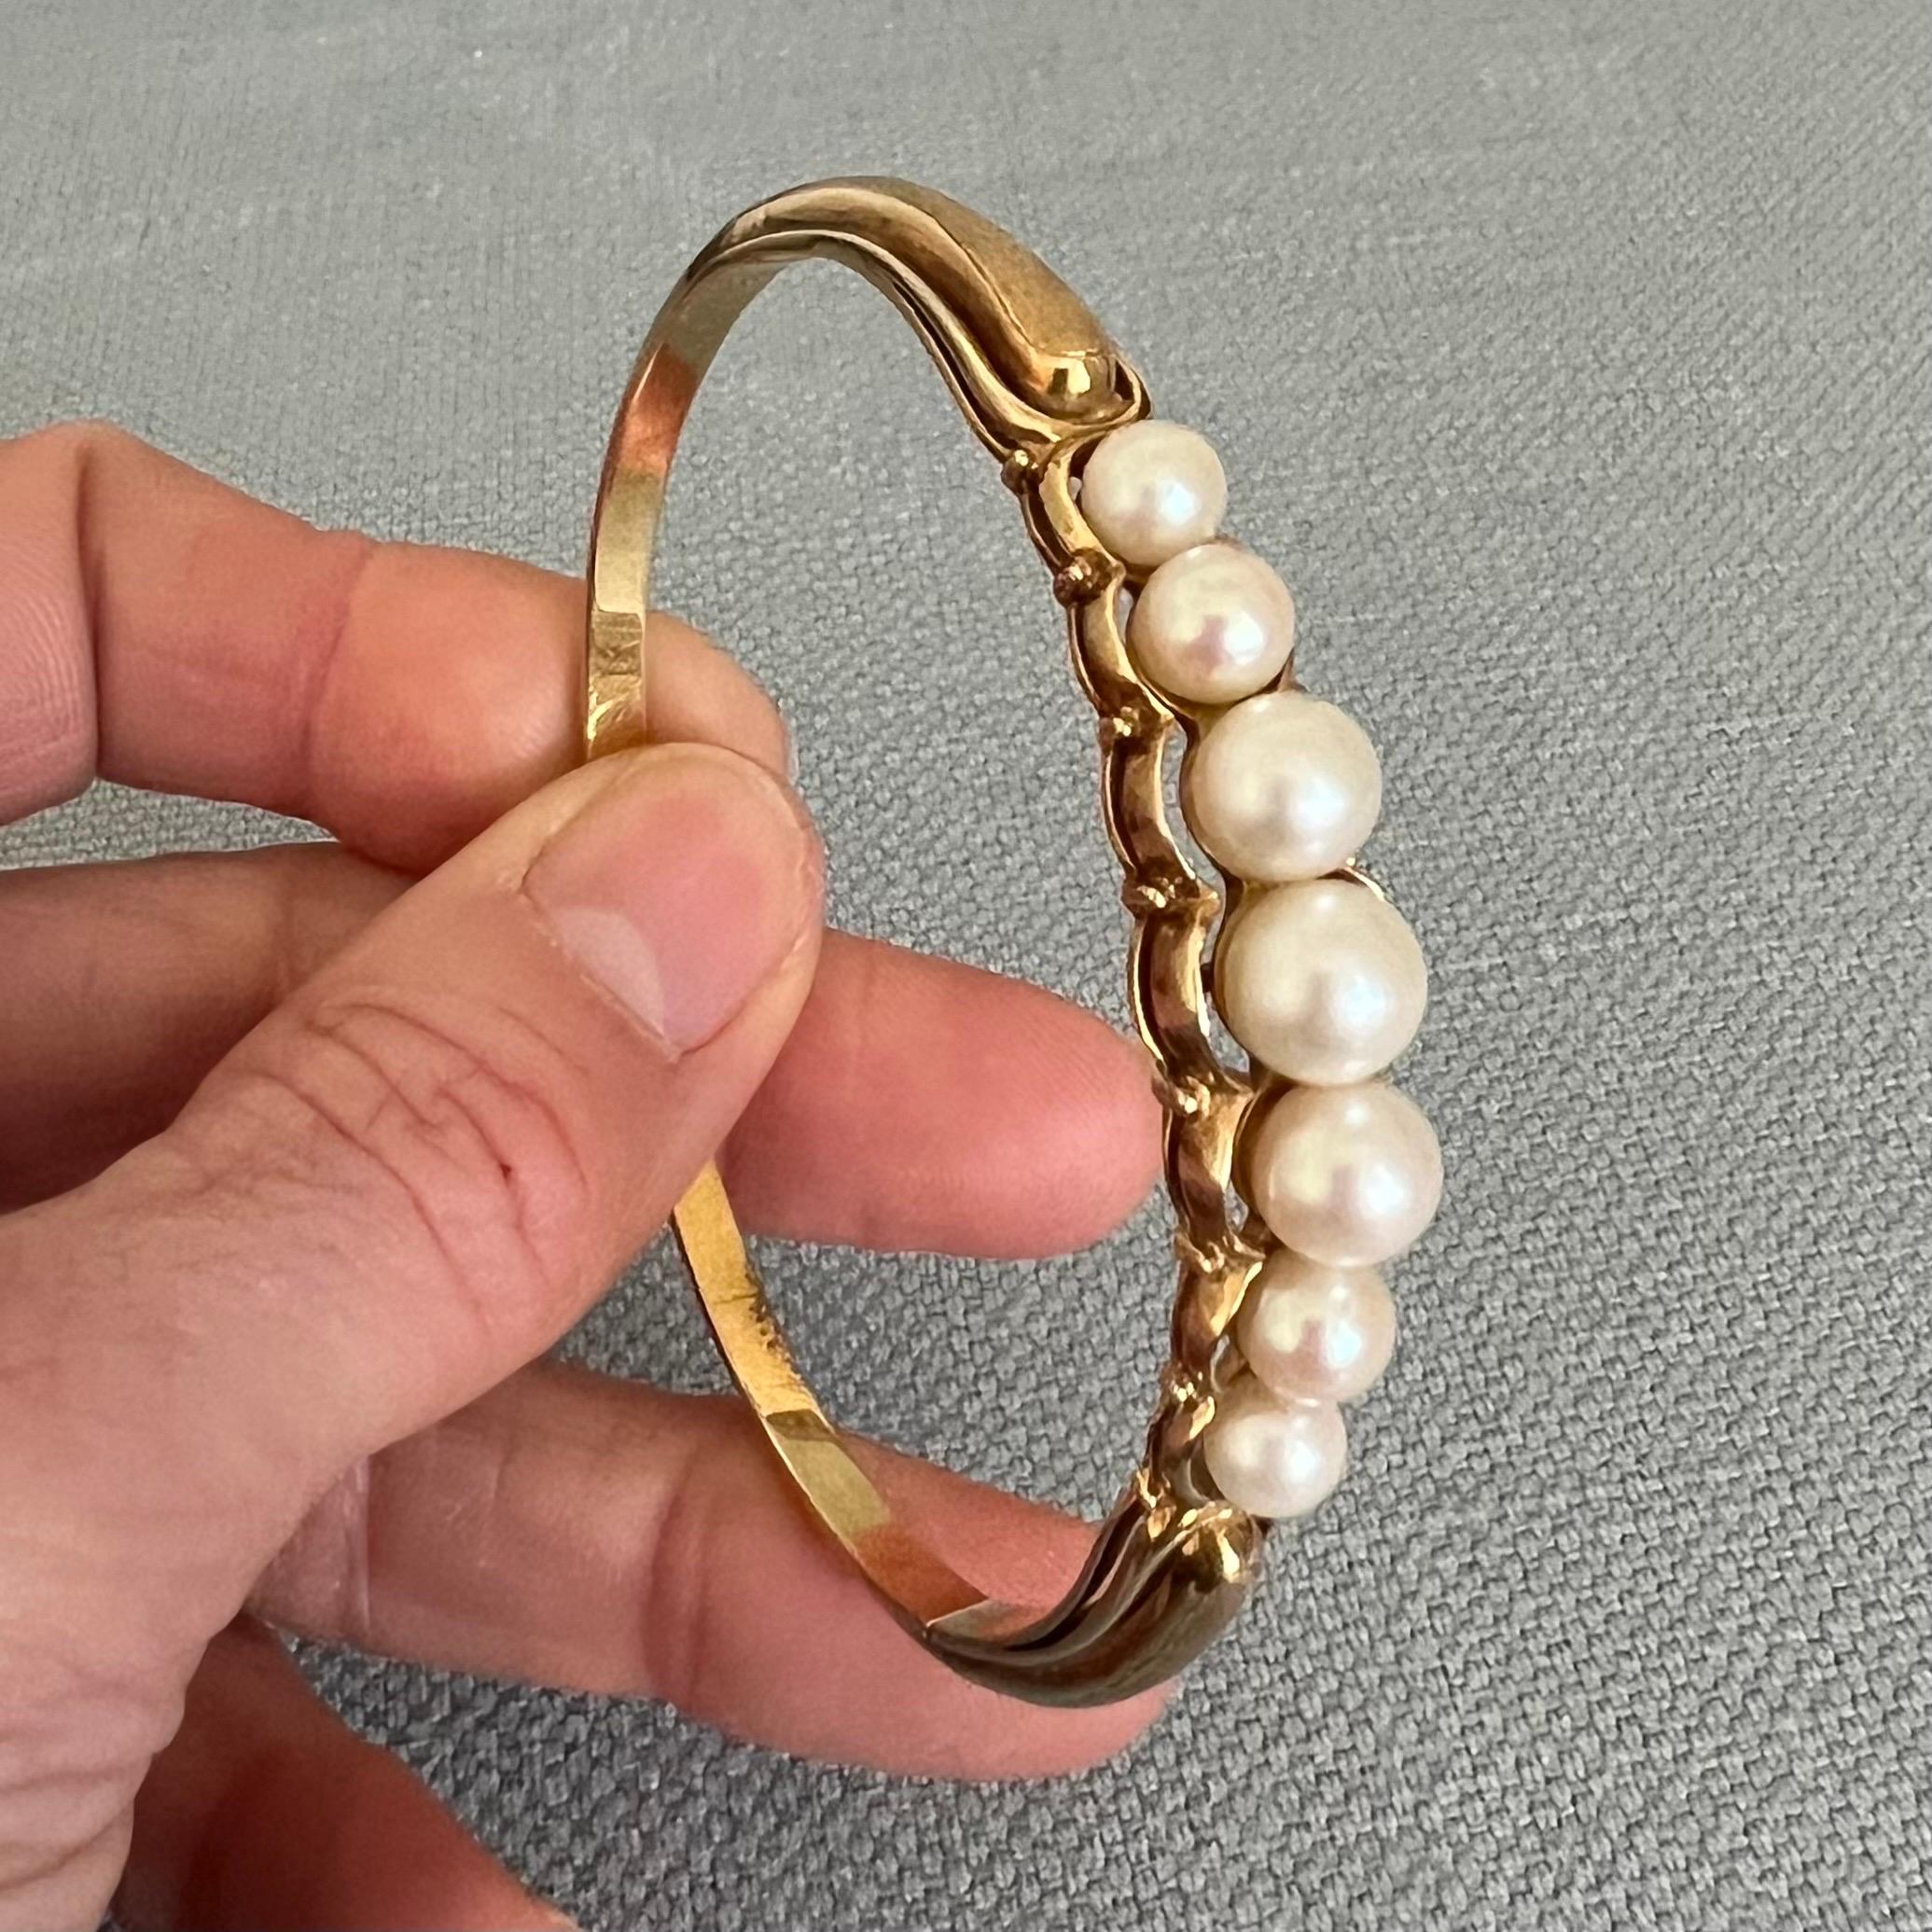 Dieses Armband aus 14-karätigem Gold mit Perlen ist wunderschön! Das Armband besteht aus einer Reihe von Akoya-Perlen in einer wunderschönen Fassung aus 14-karätigem Gold. Die Armspange ist mit sieben Perlen mit schönem Glanz und Schimmer verziert.